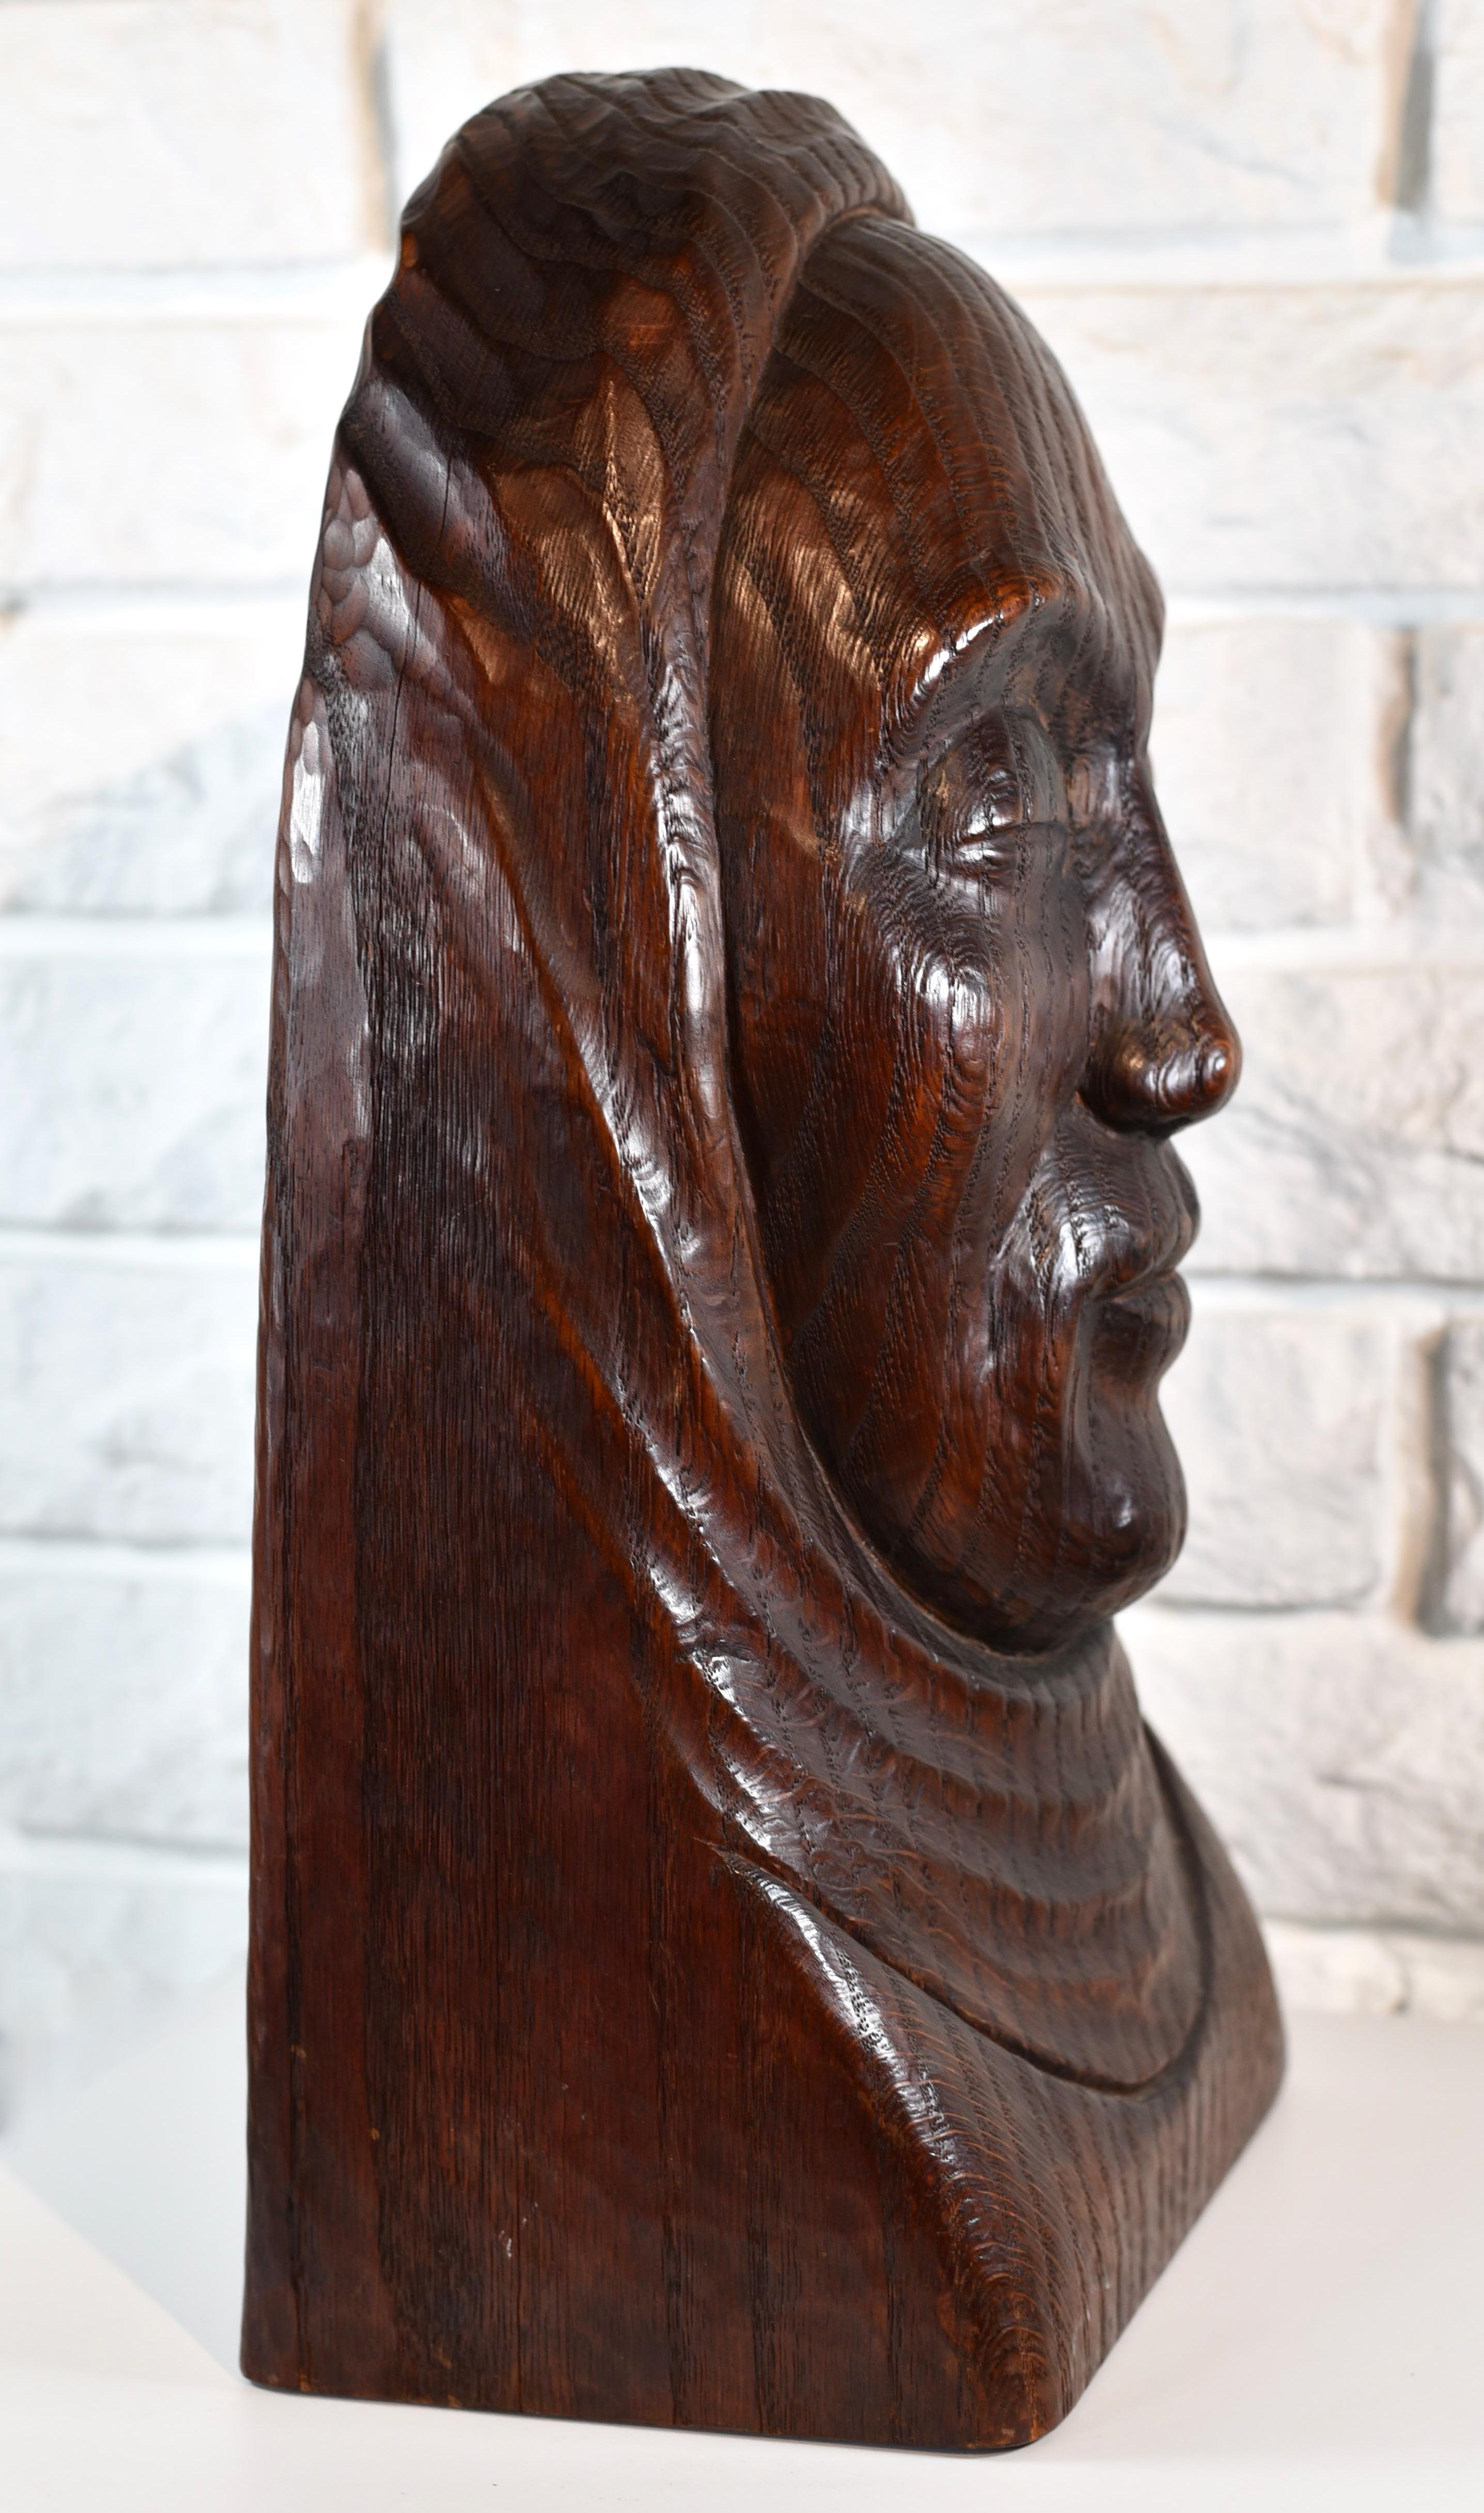 Signé au dos et daté 1942.

En 1933, Rood a commencé à sculpter le bois à Athens, dans l'Ohio, et il n'a pas tardé à présenter sa première exposition personnelle à Argental Galleries, à New York, en 1937. Son style a commencé par un style